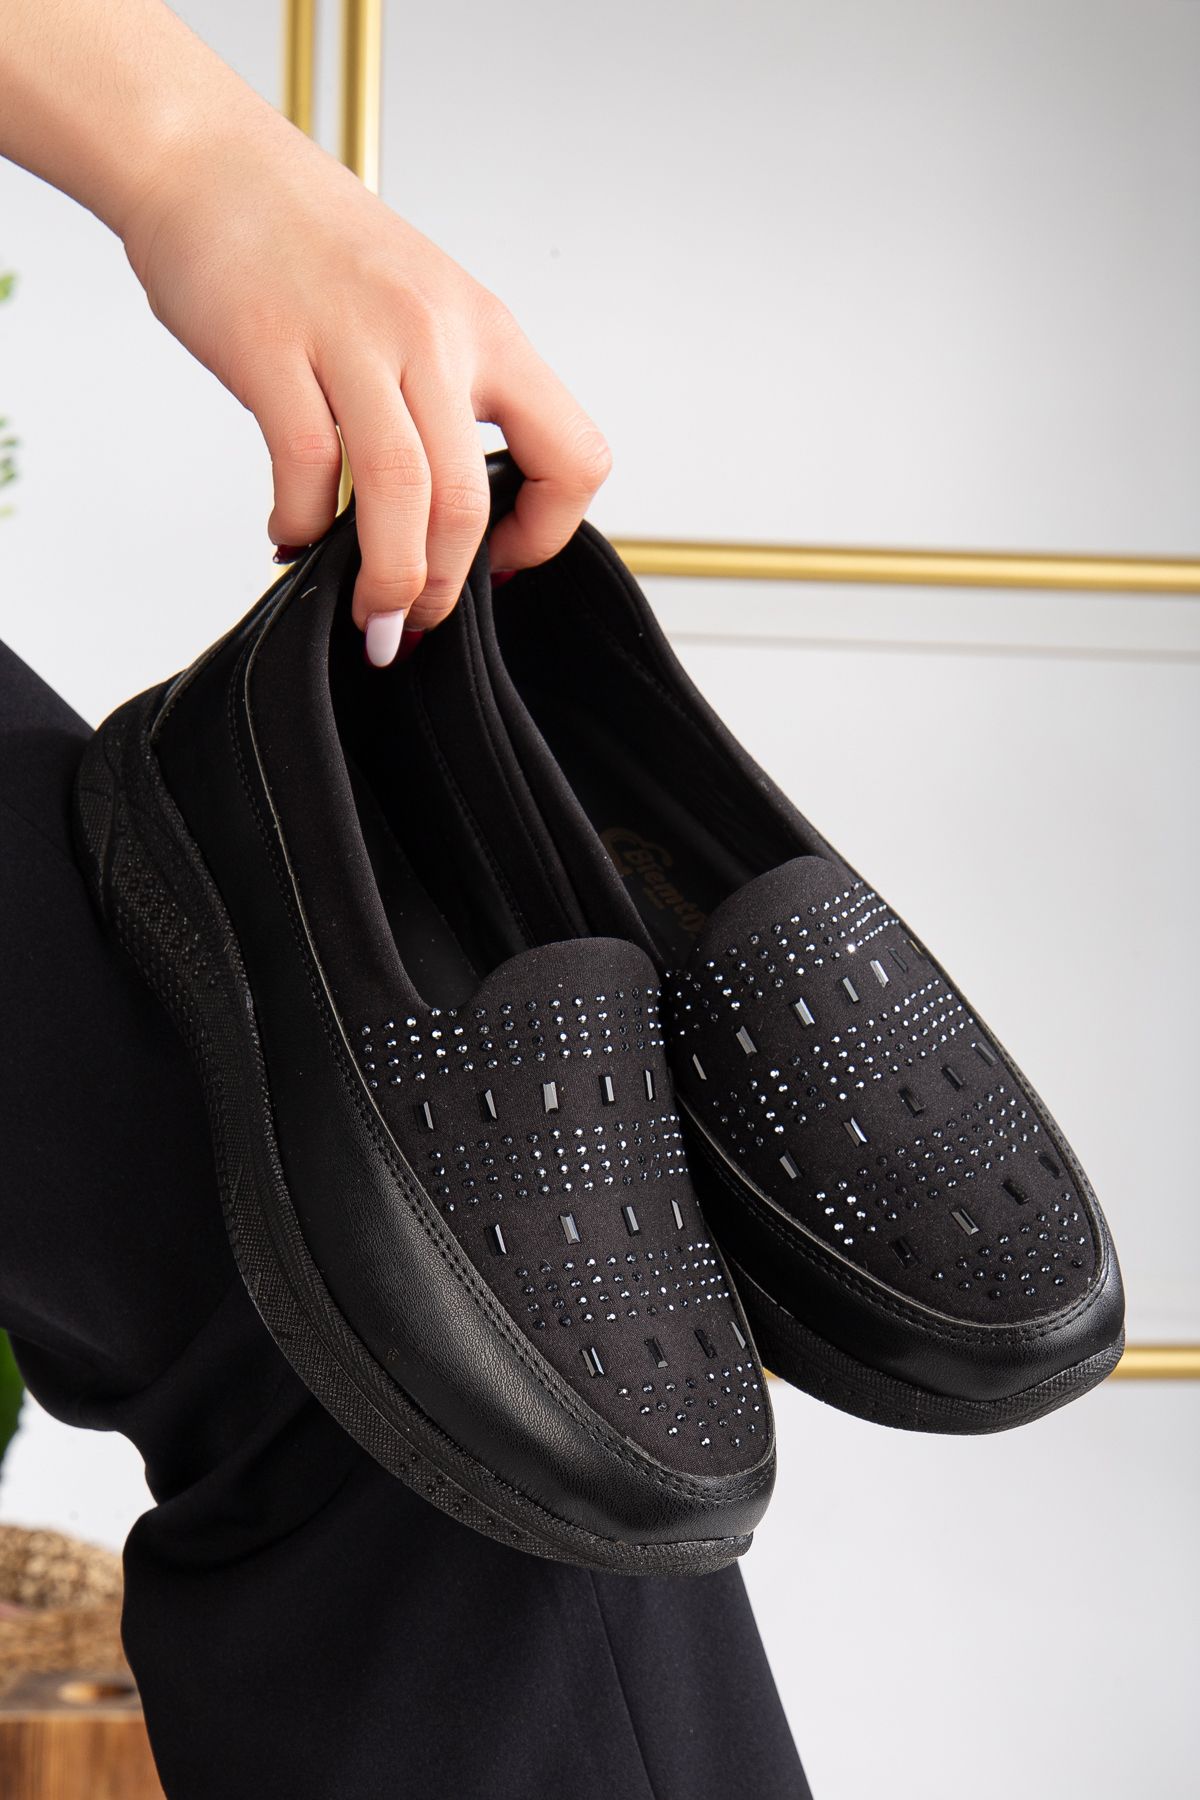 ayakkabıhavuzu Siyah Streç Taşlı Kadın Hafif Taban Rahat Ortopedik Ayakkabı